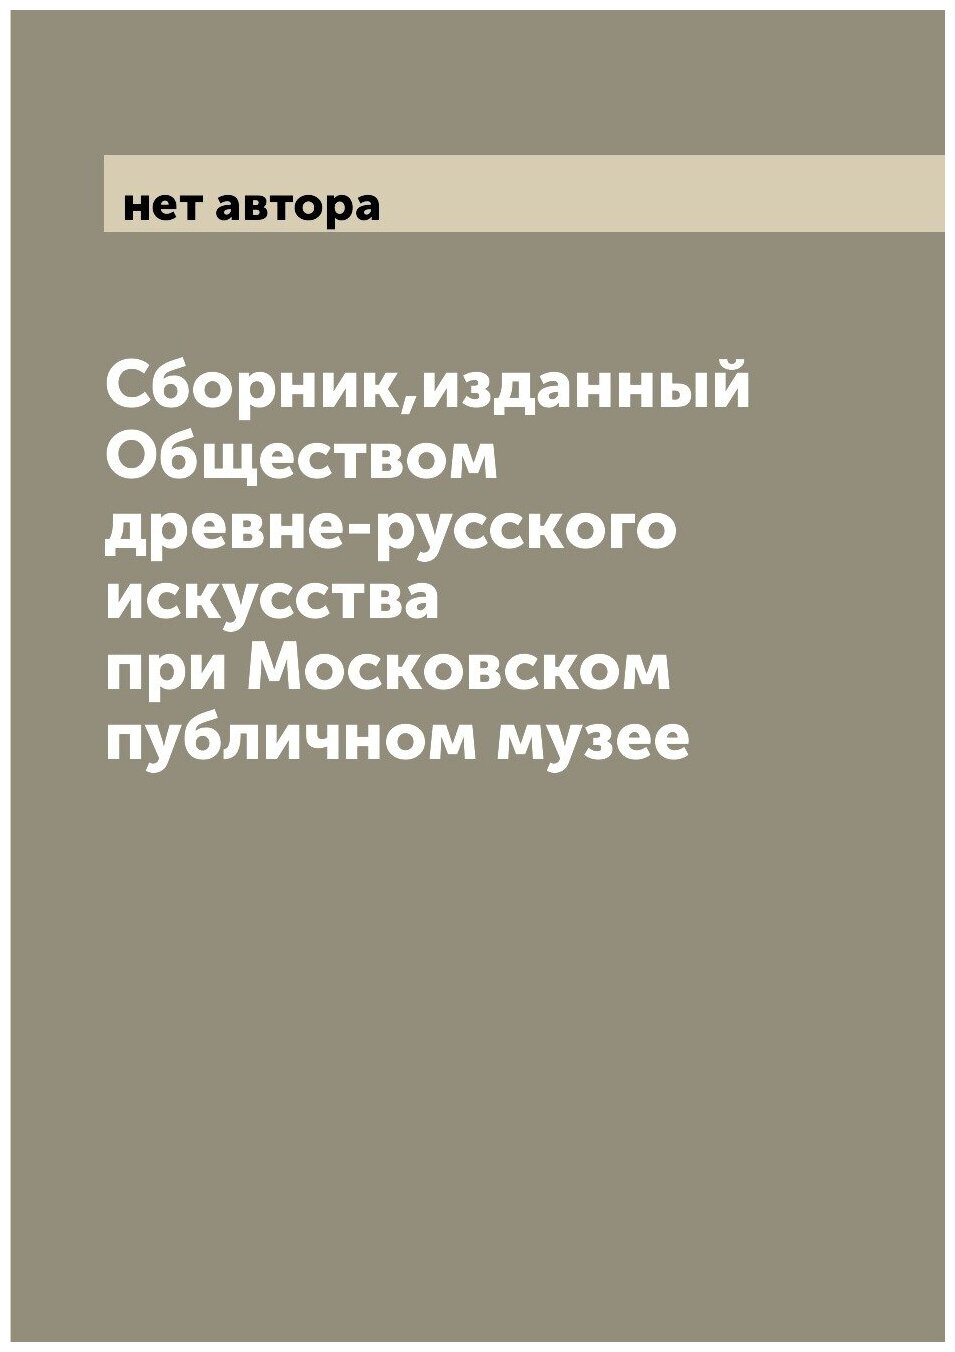 Сборник, изданный Обществом древне-русского искусства при Московском публичном музее